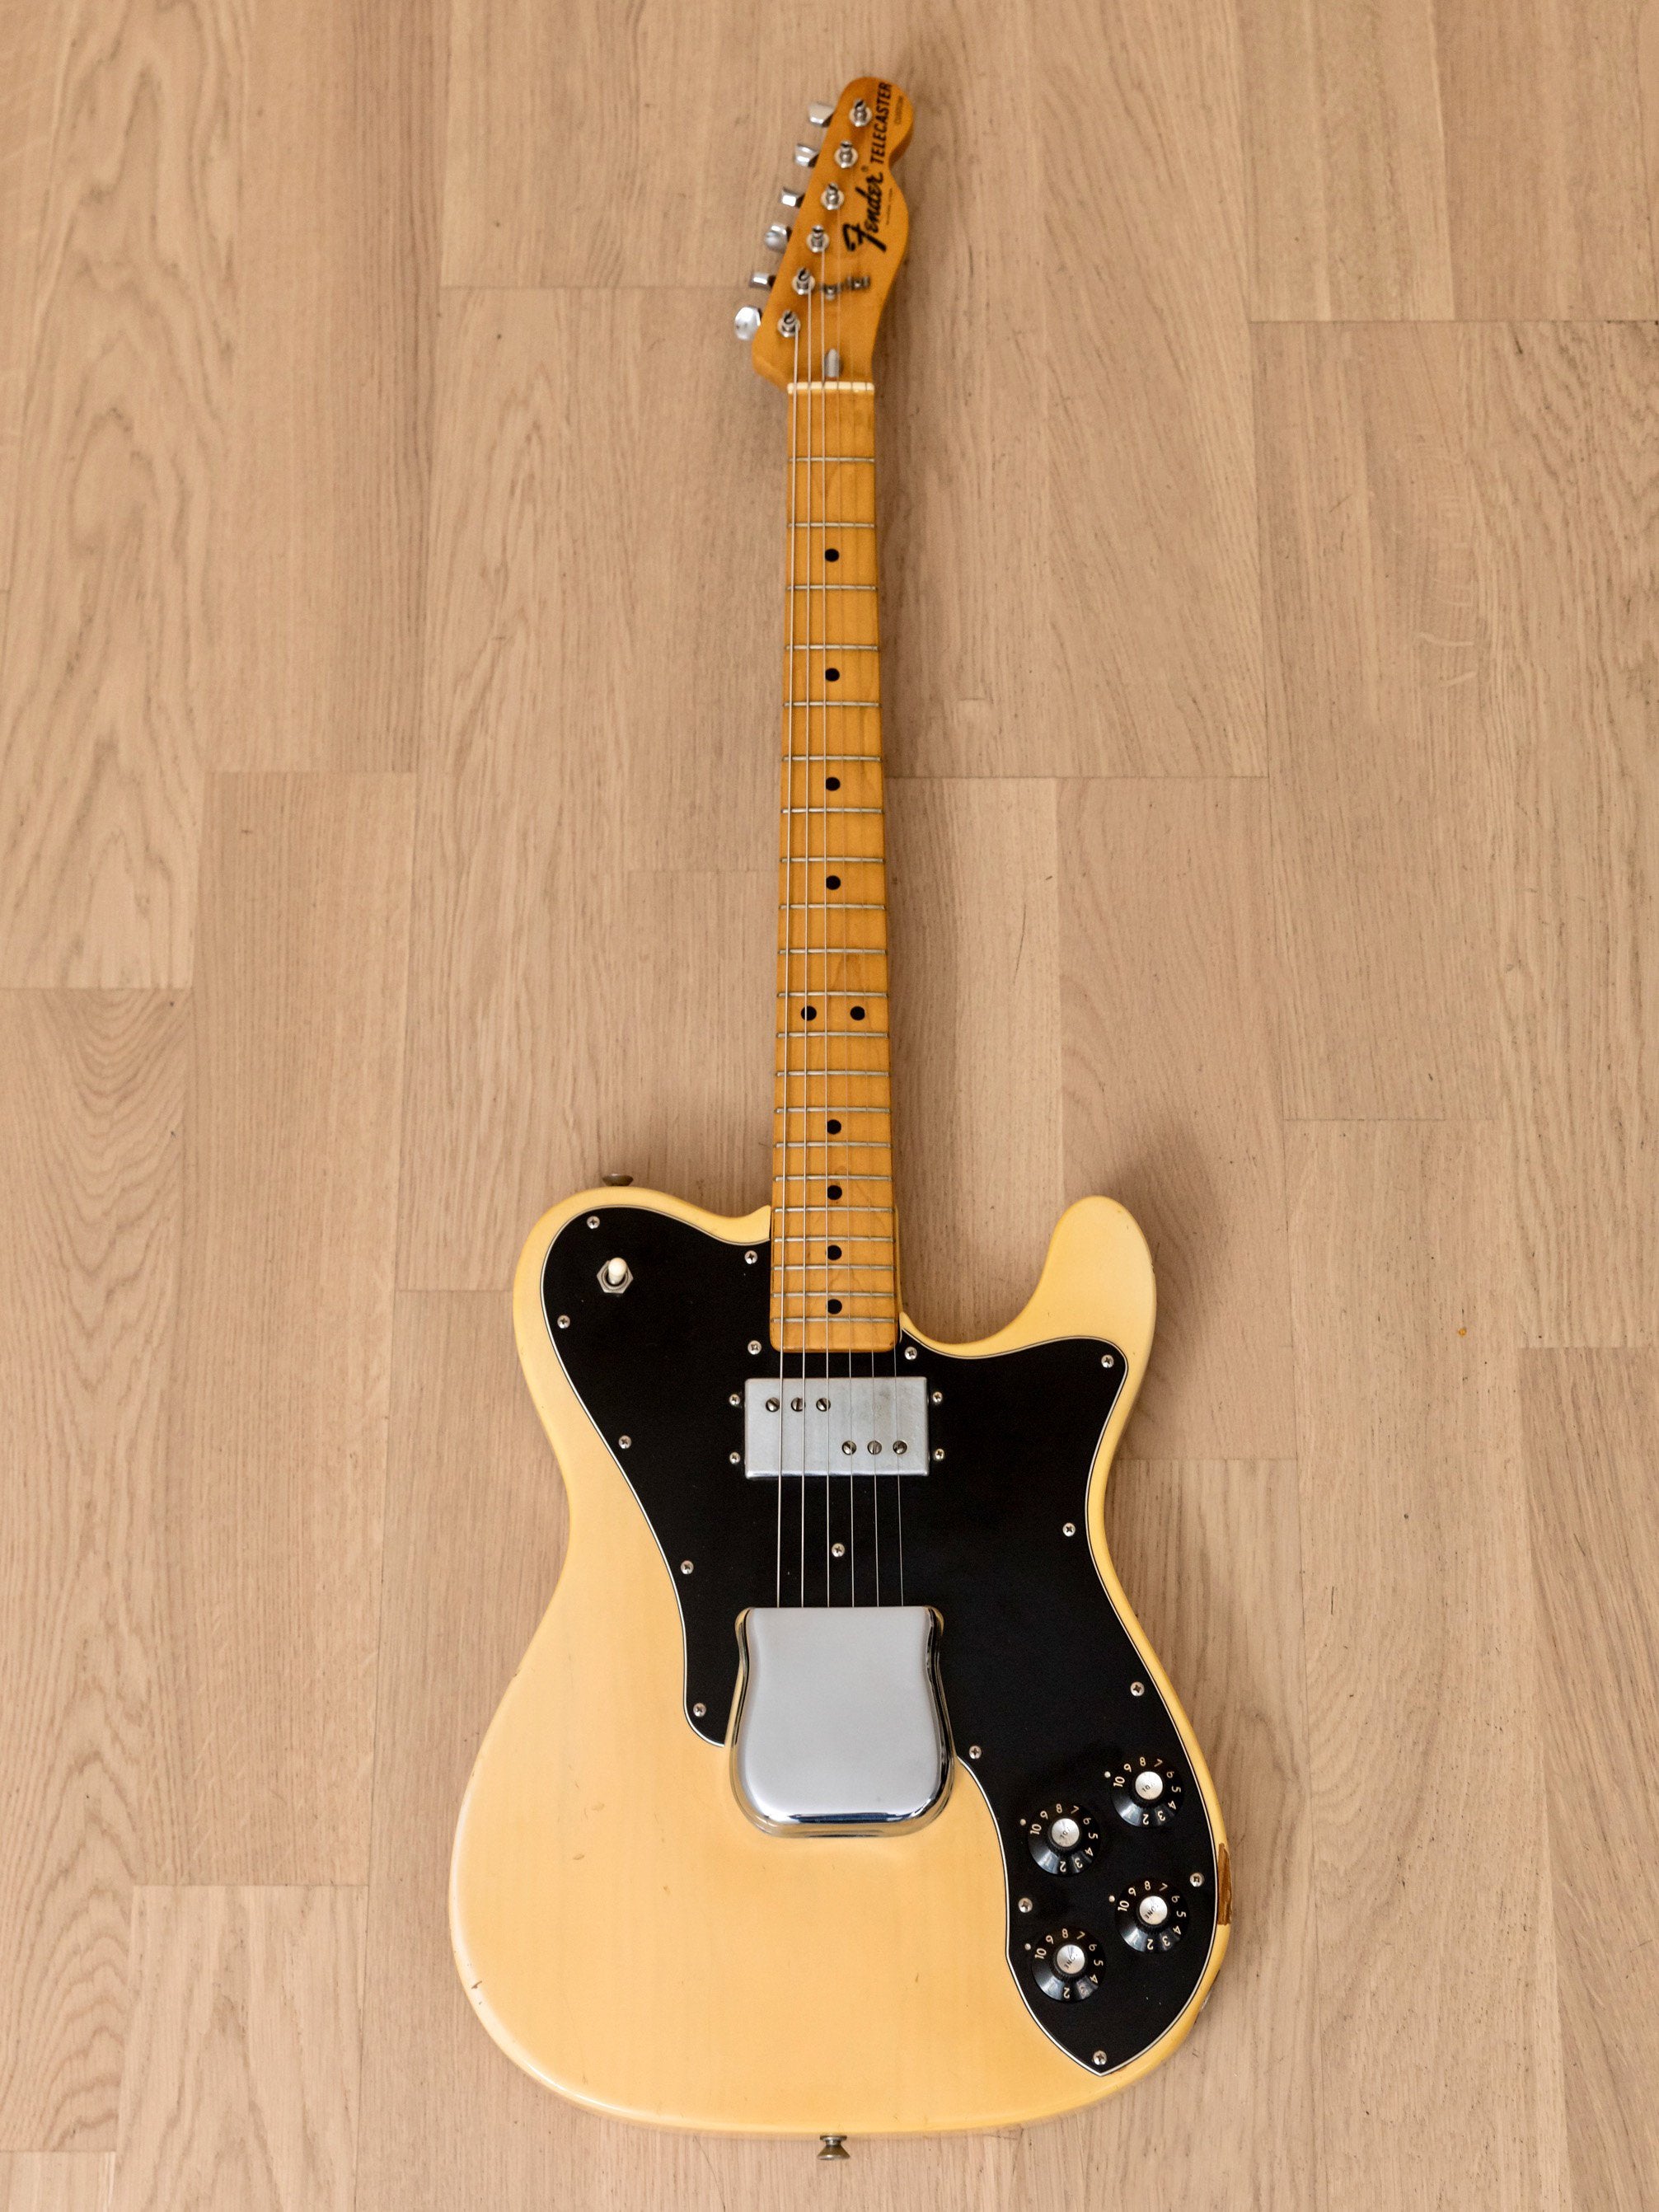 1973 Fender Telecaster Custom Vintage Guitar Blonde w/ Case, Wide Range